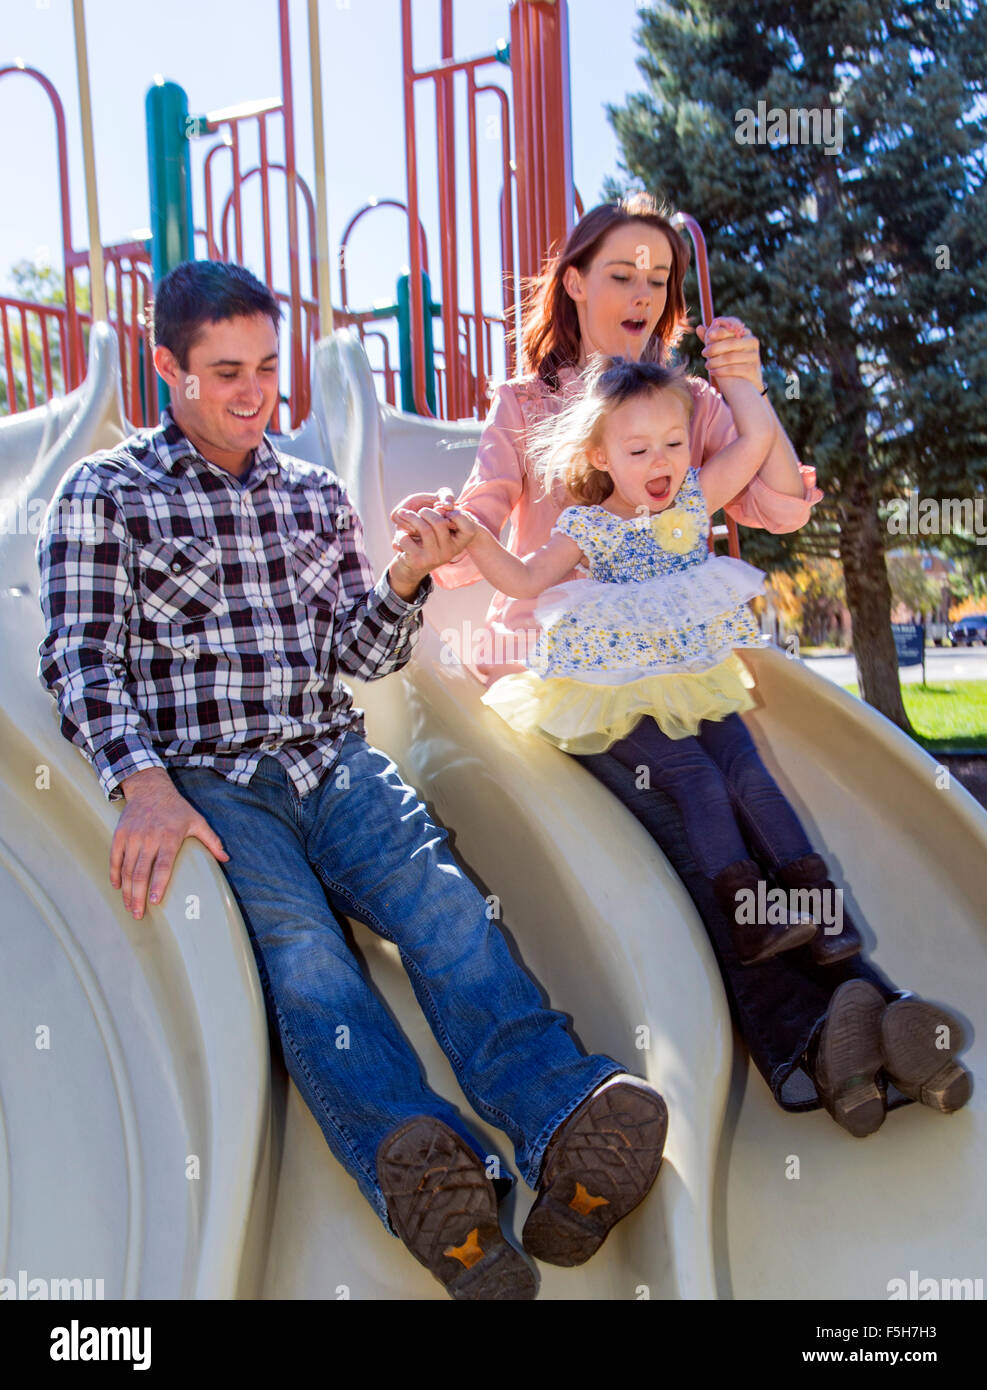 Vater, Mutter und niedliche junge Tochter spielen auf Park Schiebe-board Stockfoto